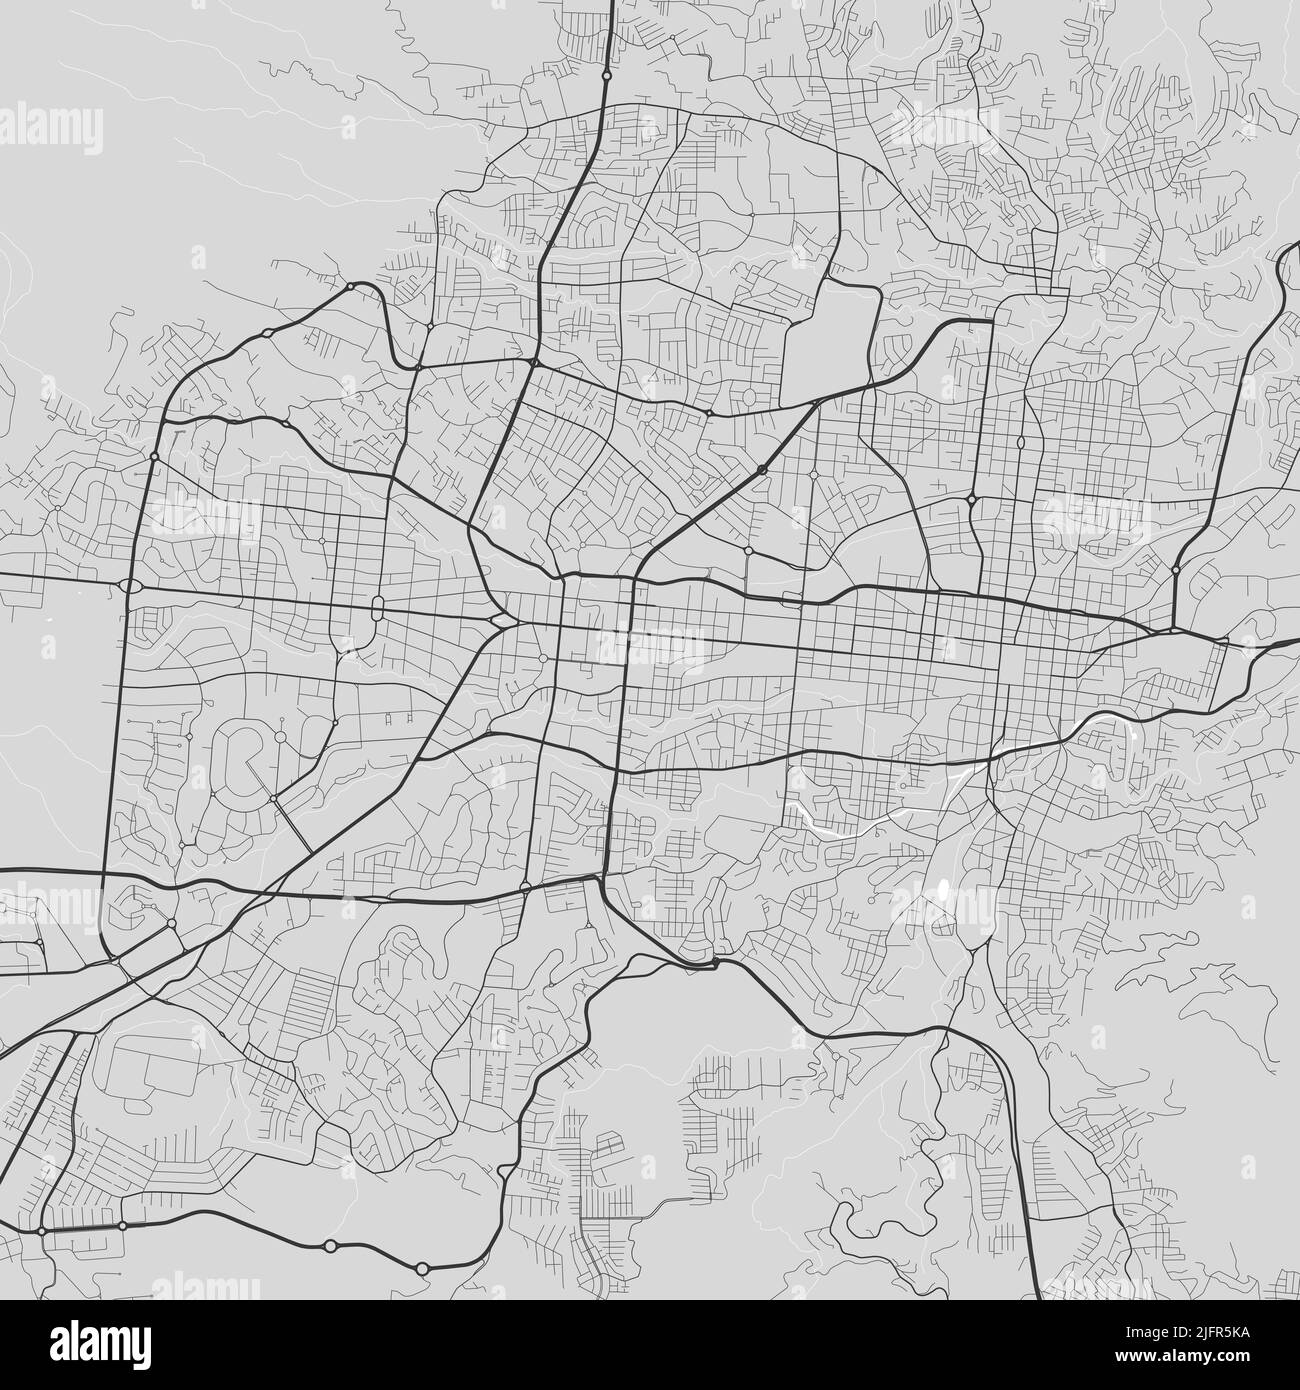 Mappa vettoriale della città di San Salvador. Poster in scala di grigi urbana. Immagine della mappa stradale con vista dell'area metropolitana della città. Illustrazione Vettoriale